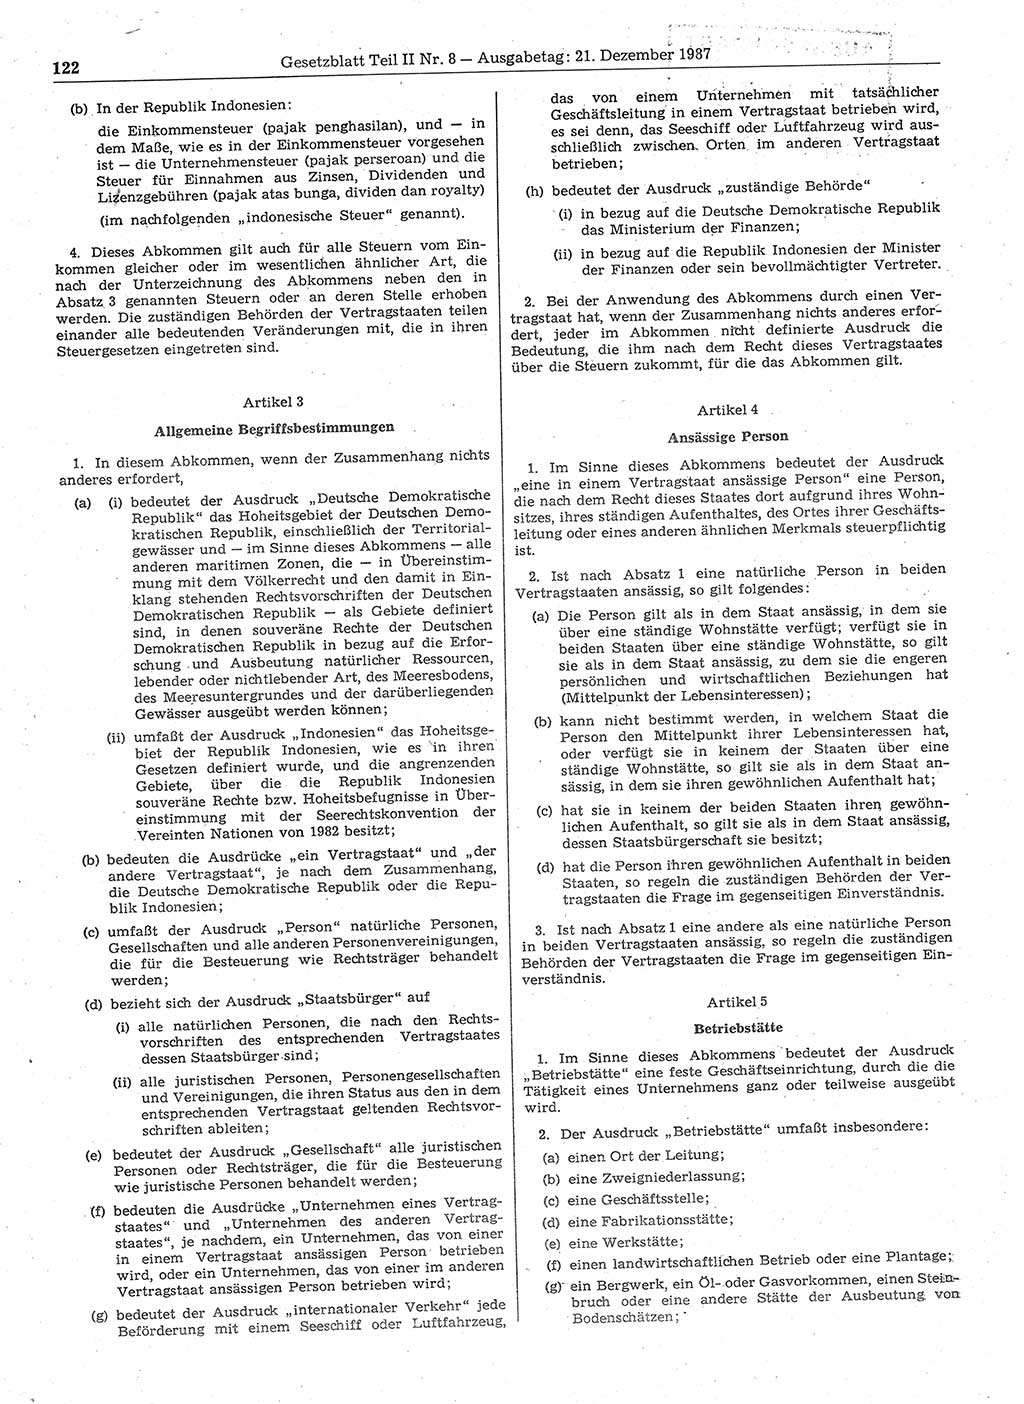 Gesetzblatt (GBl.) der Deutschen Demokratischen Republik (DDR) Teil ⅠⅠ 1987, Seite 122 (GBl. DDR ⅠⅠ 1987, S. 122)